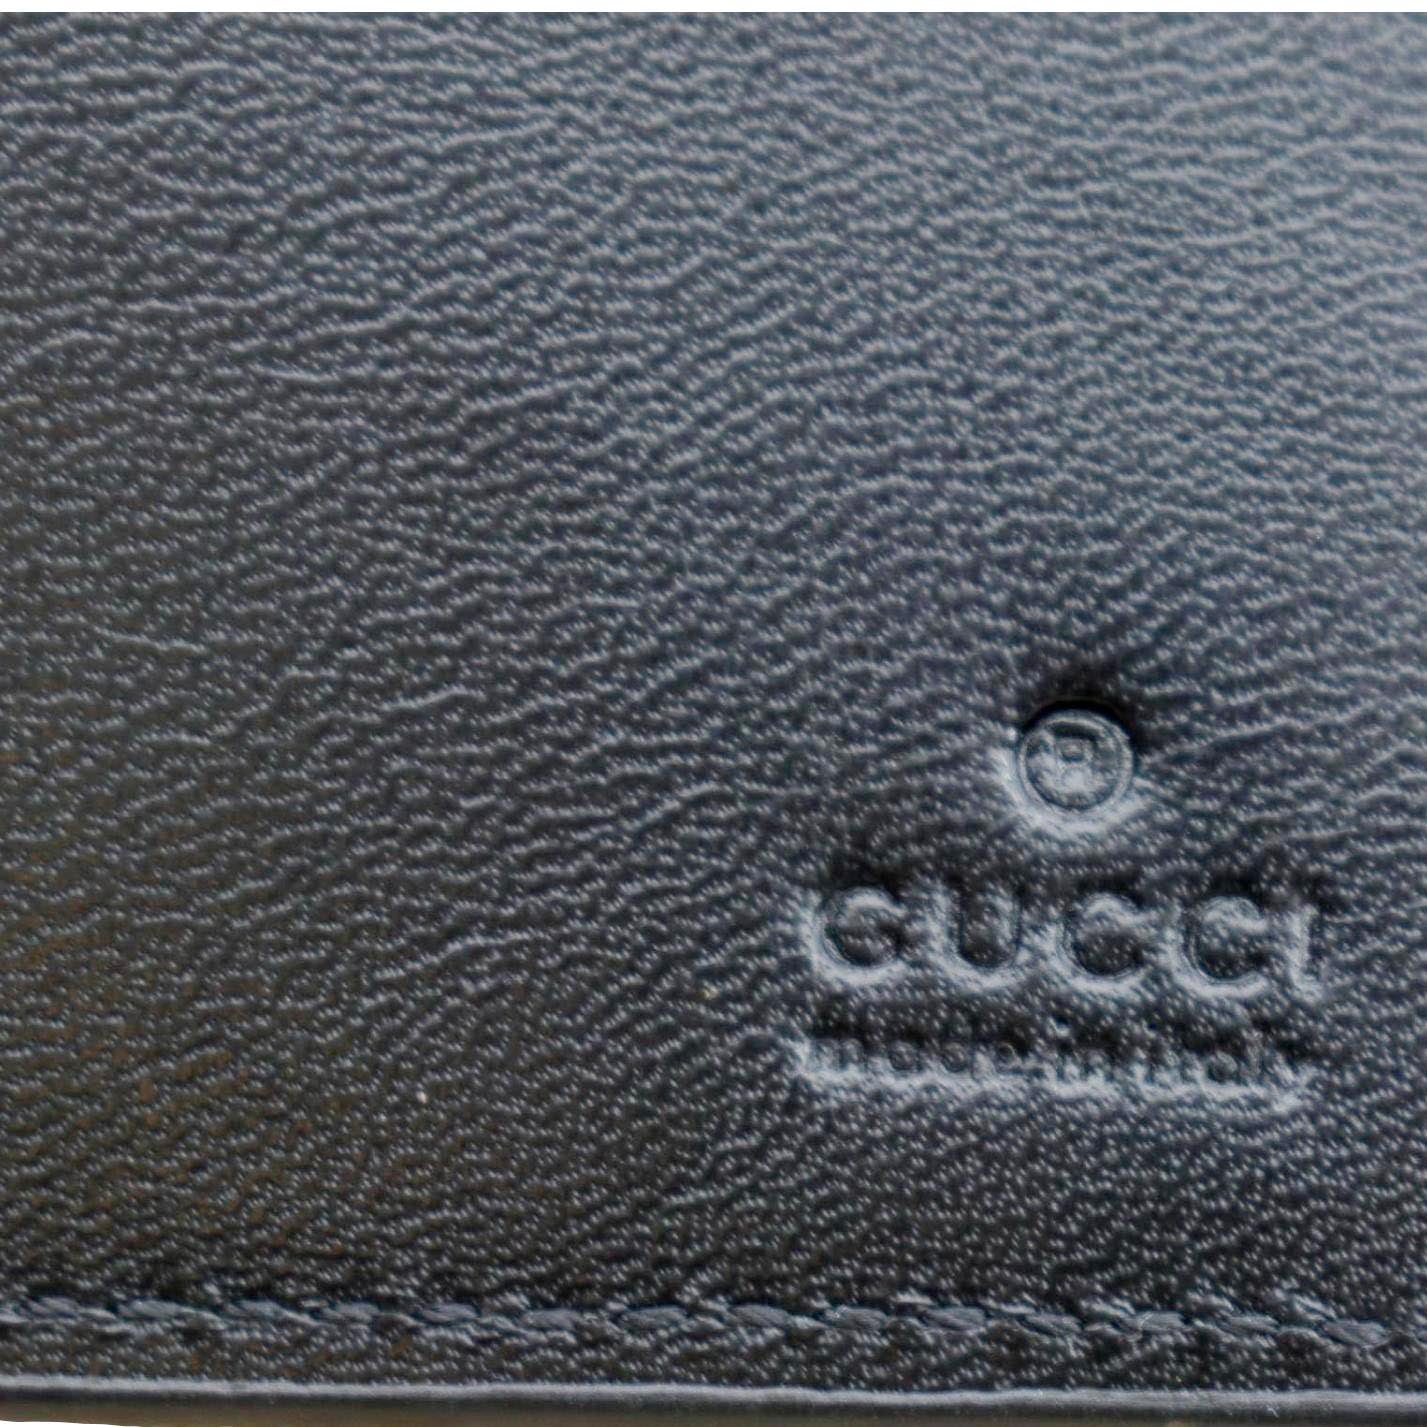 Gucci Bifold Wallet GG Monogram Beige/Ebony